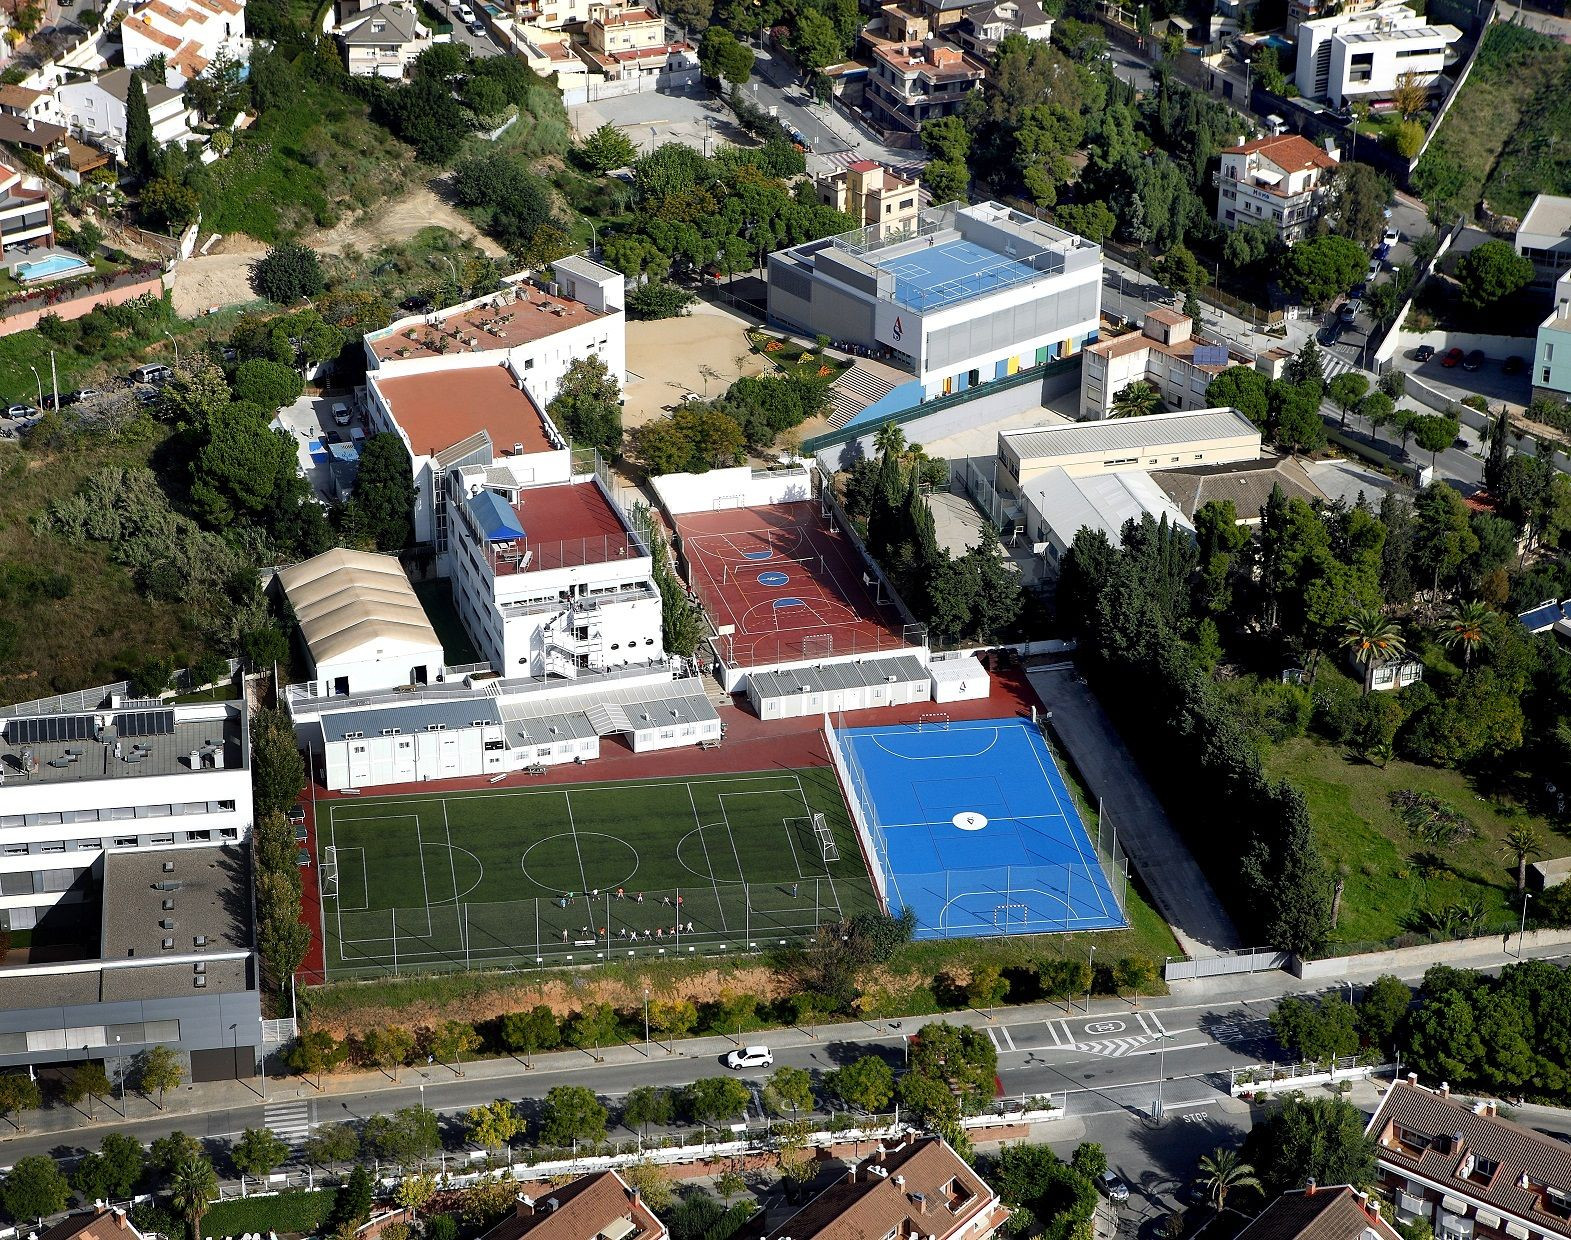 La escuela de élite American School of Barcelona situada en Esplugues de Llobregat